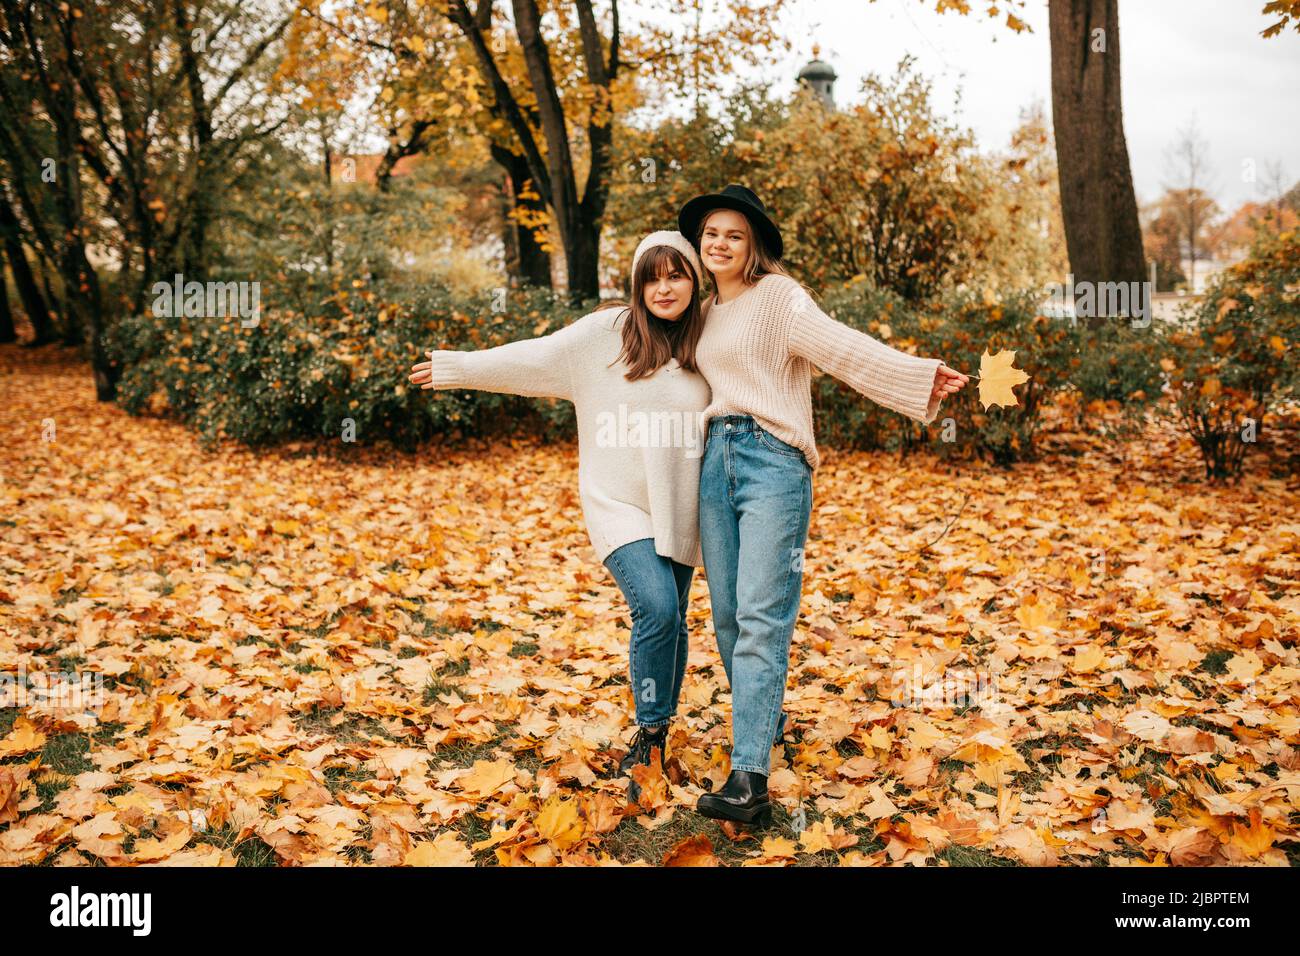 Zwei junge Freundinnen haben Spaß im Park, in dem sie mit ihren Armen umeinander und ausgestreckten Armen posieren. Sie sind in blauen Jeans und gekleidet Stockfoto